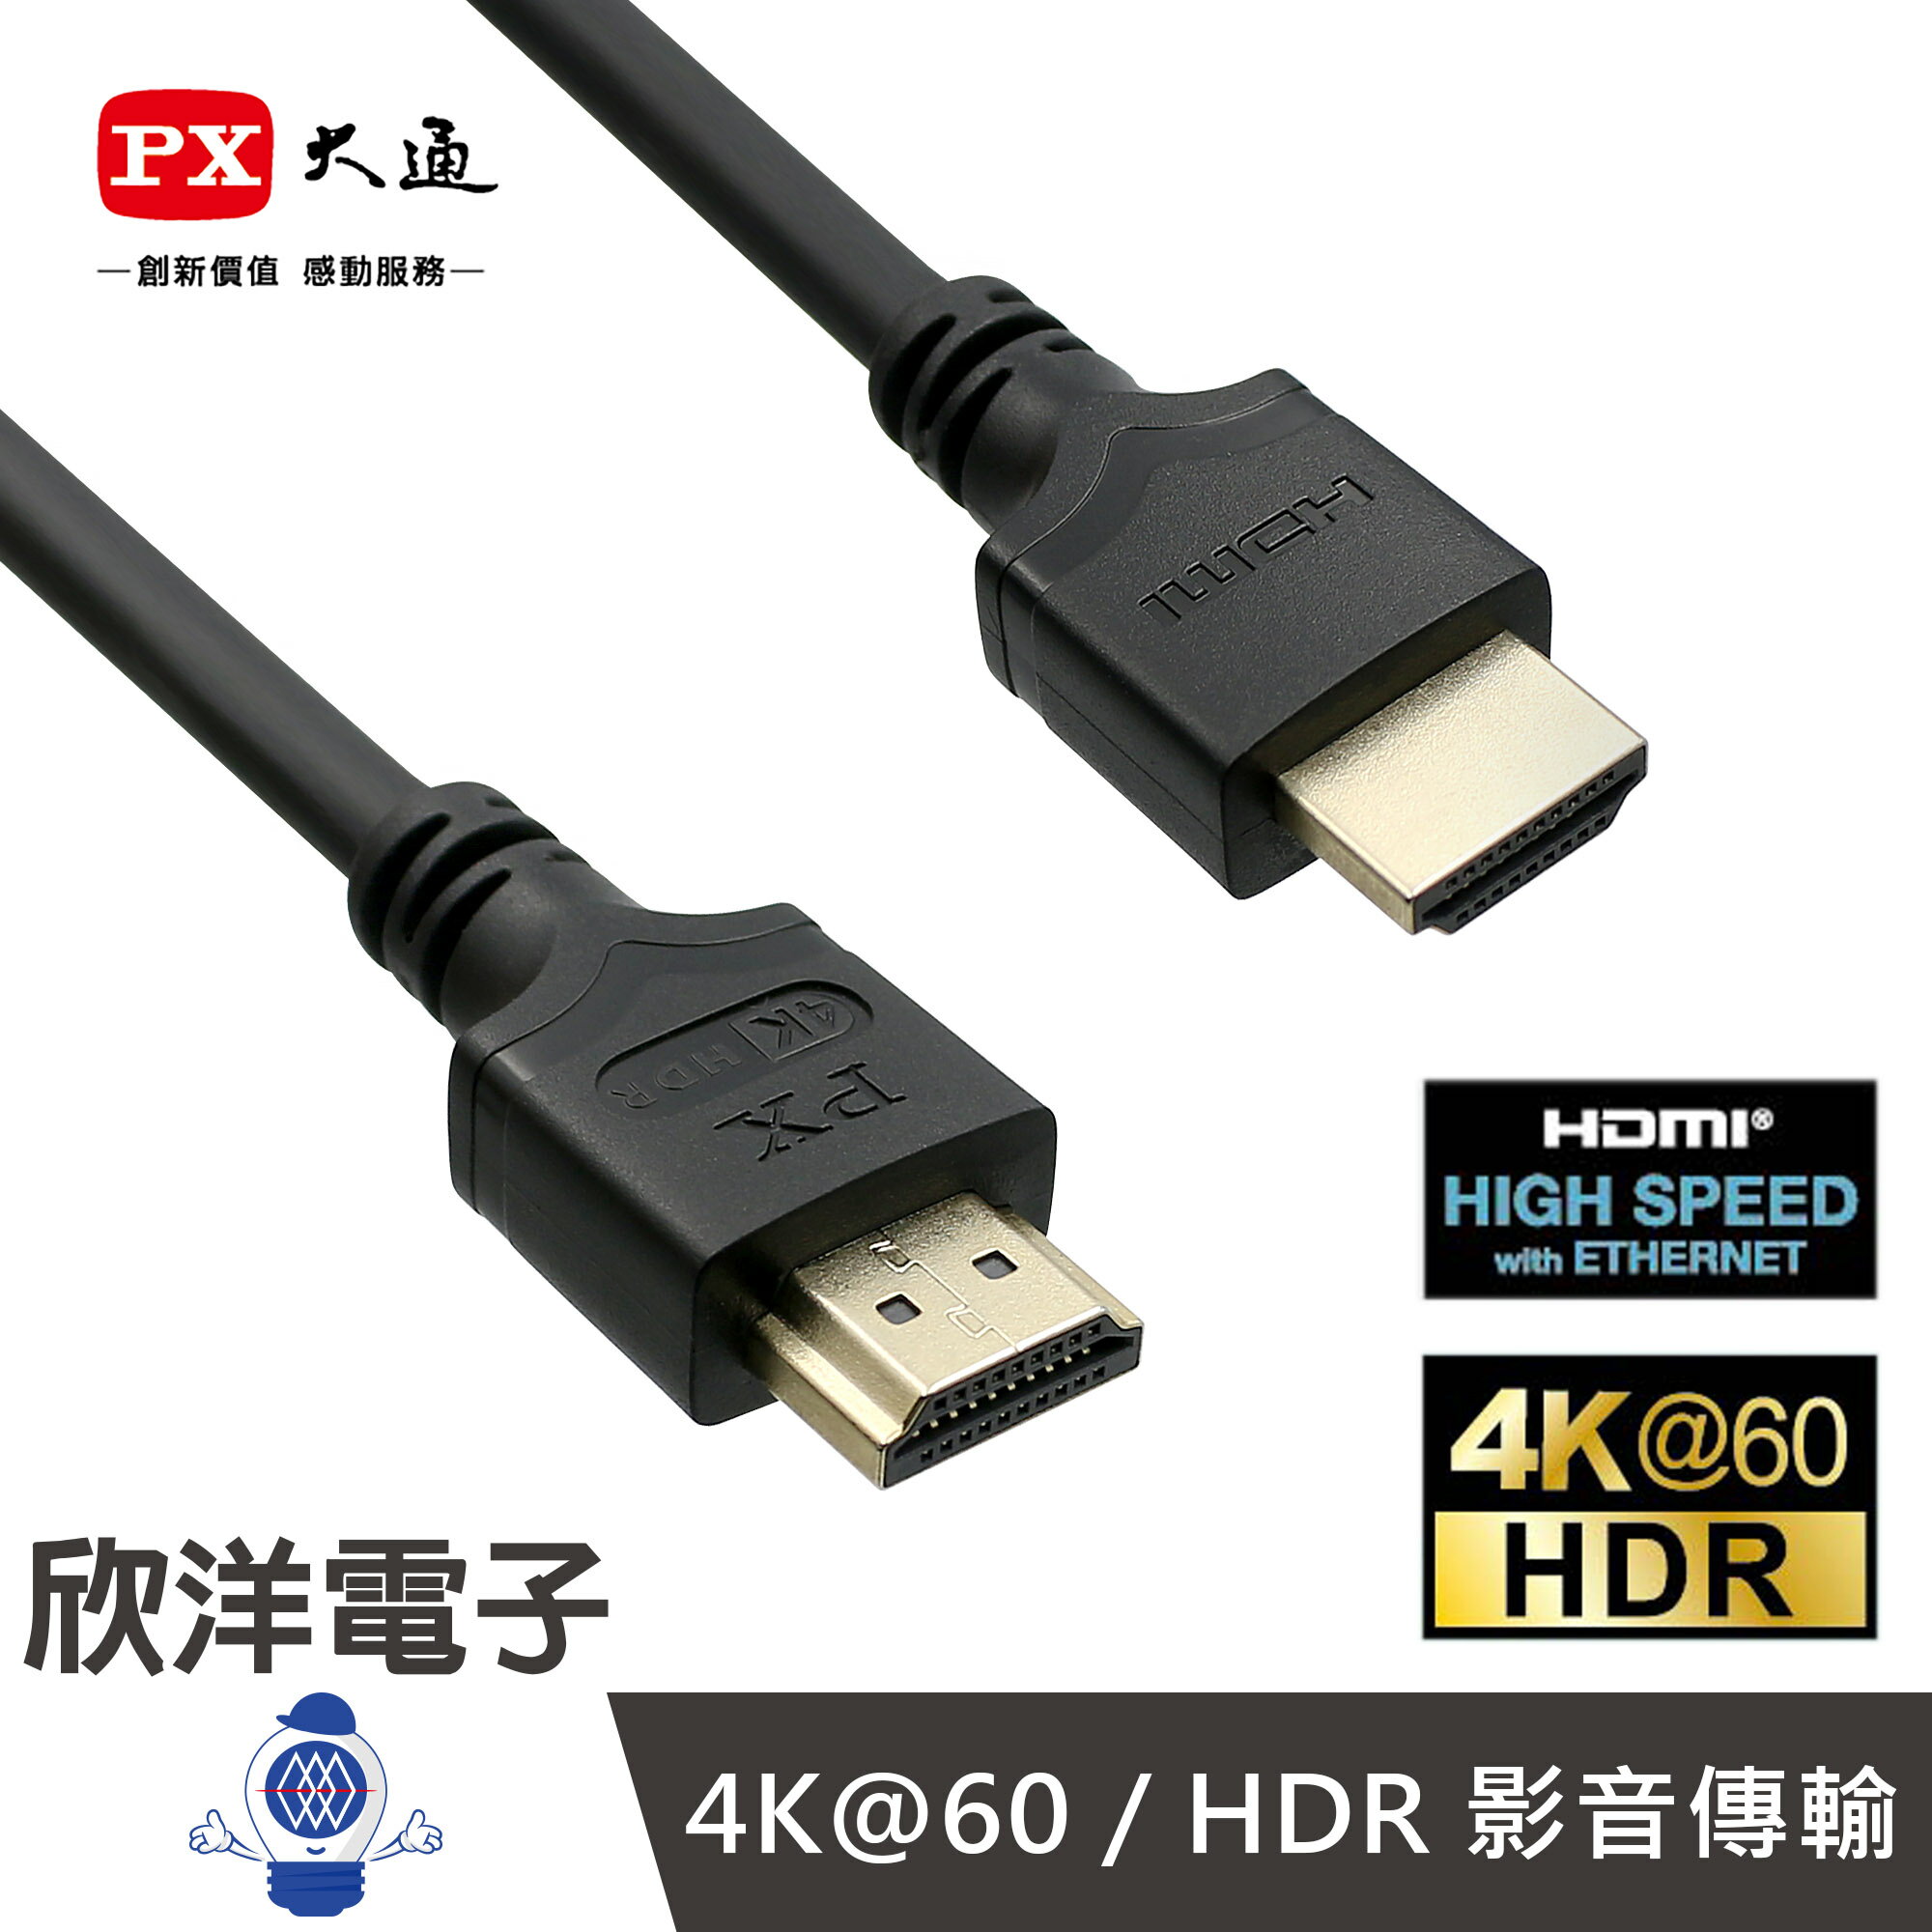 ※ 欣洋電子 ※ PX大通 HDMI線 高速乙太網HDMI線 1.2米 (HDMI-1.2MM) 高畫質訊號線 適用32吋以內電視 螢幕 電子材料